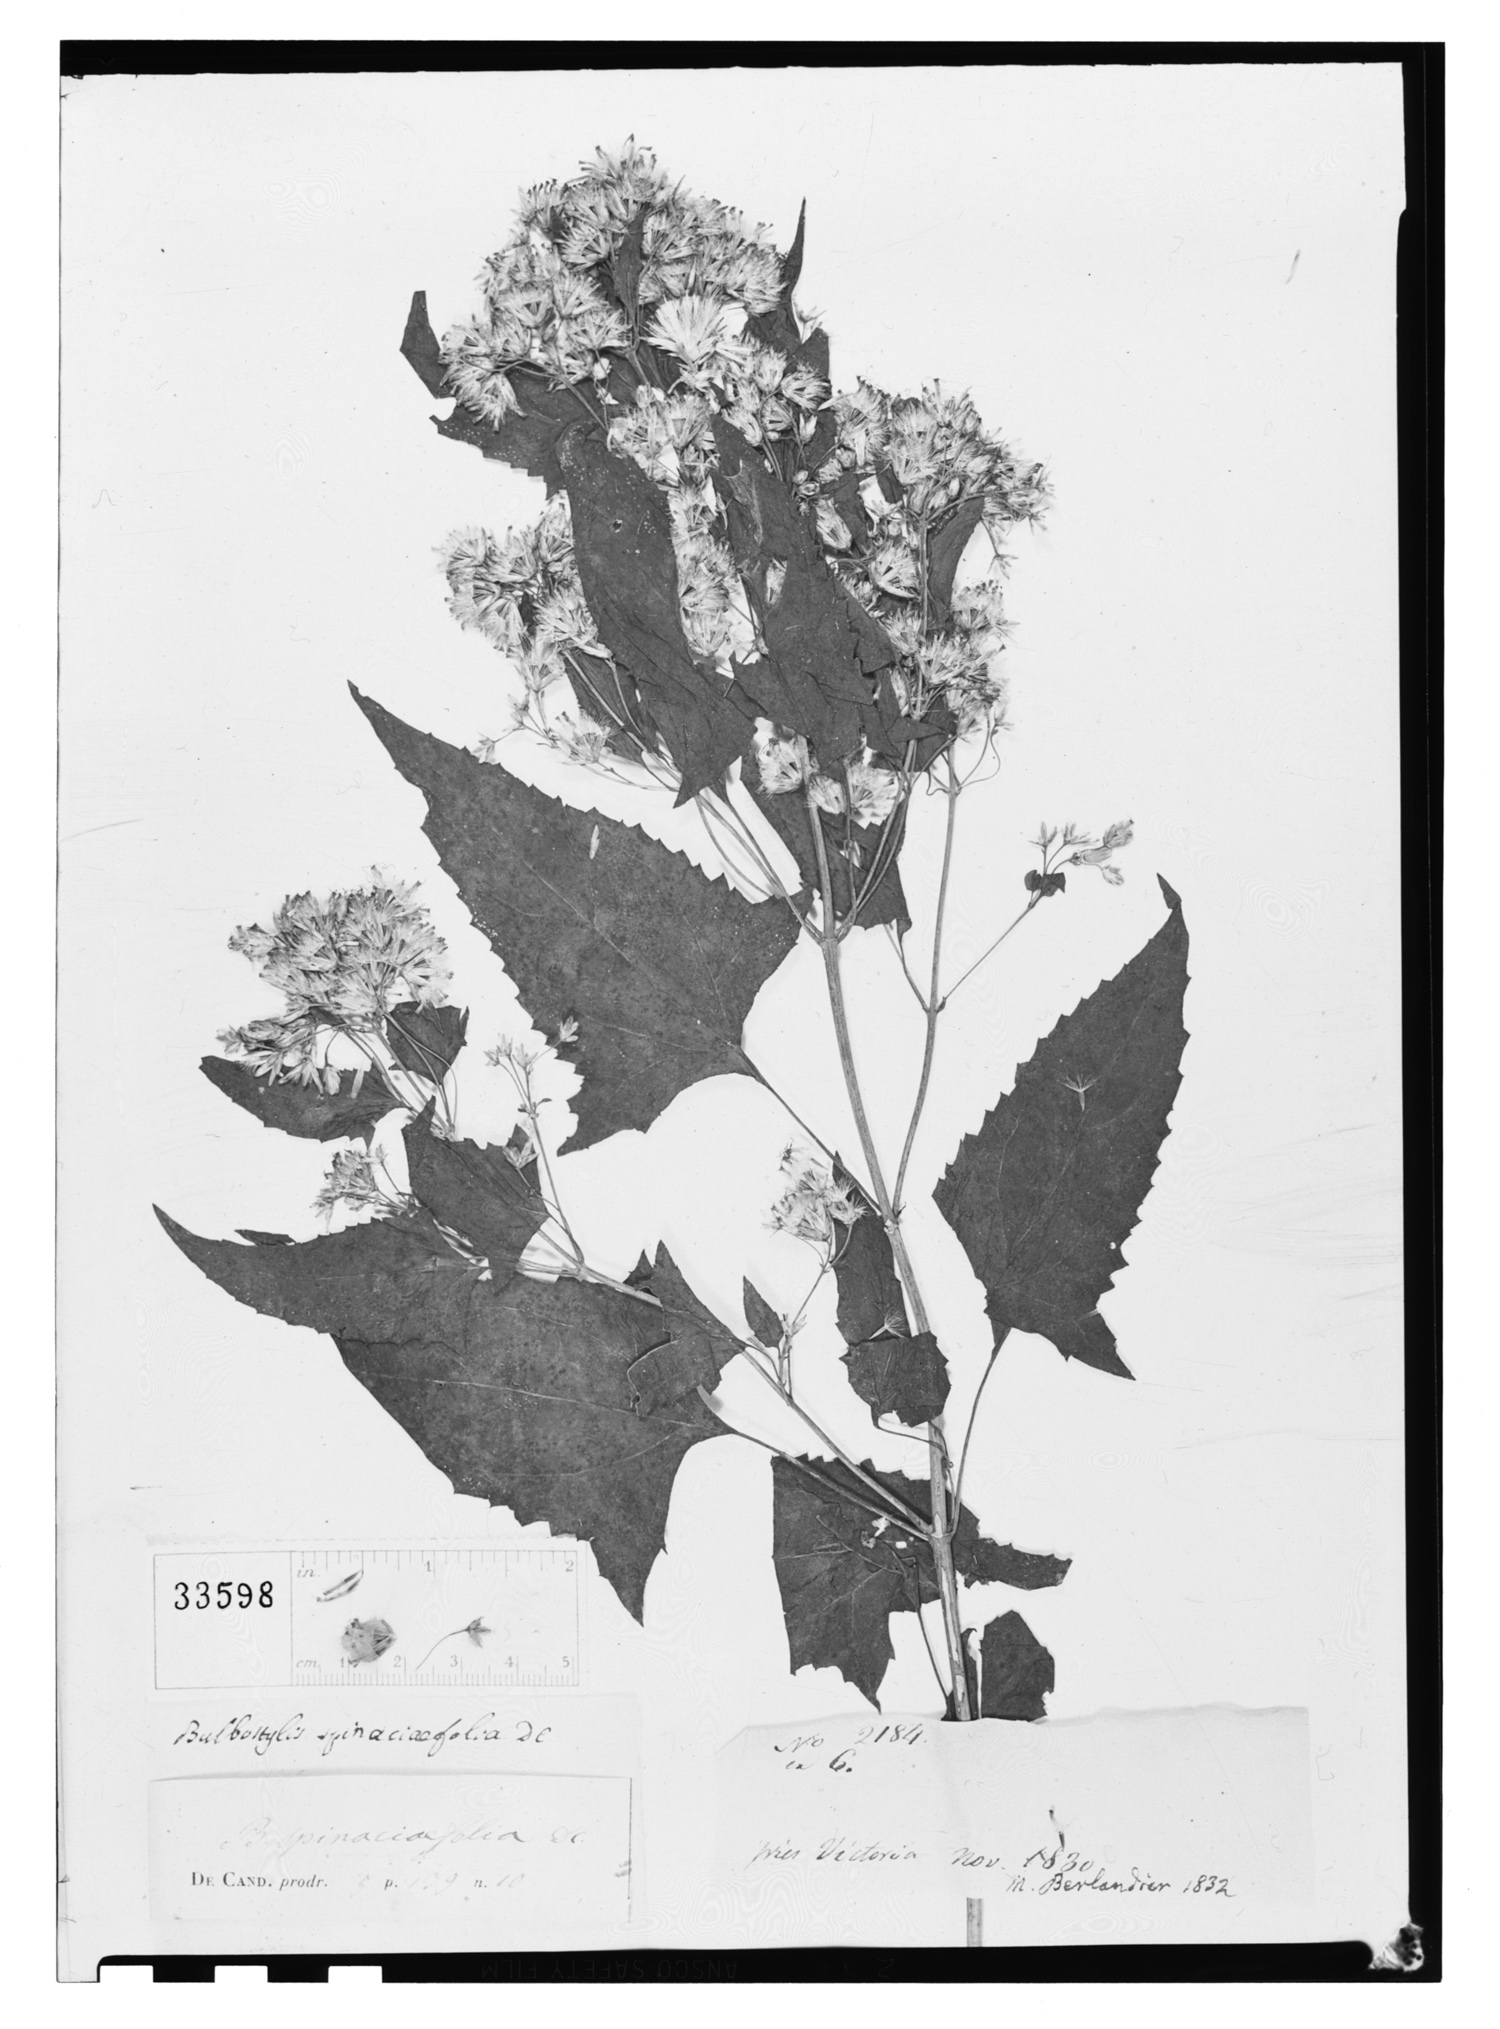 Critonia spinaciifolia image